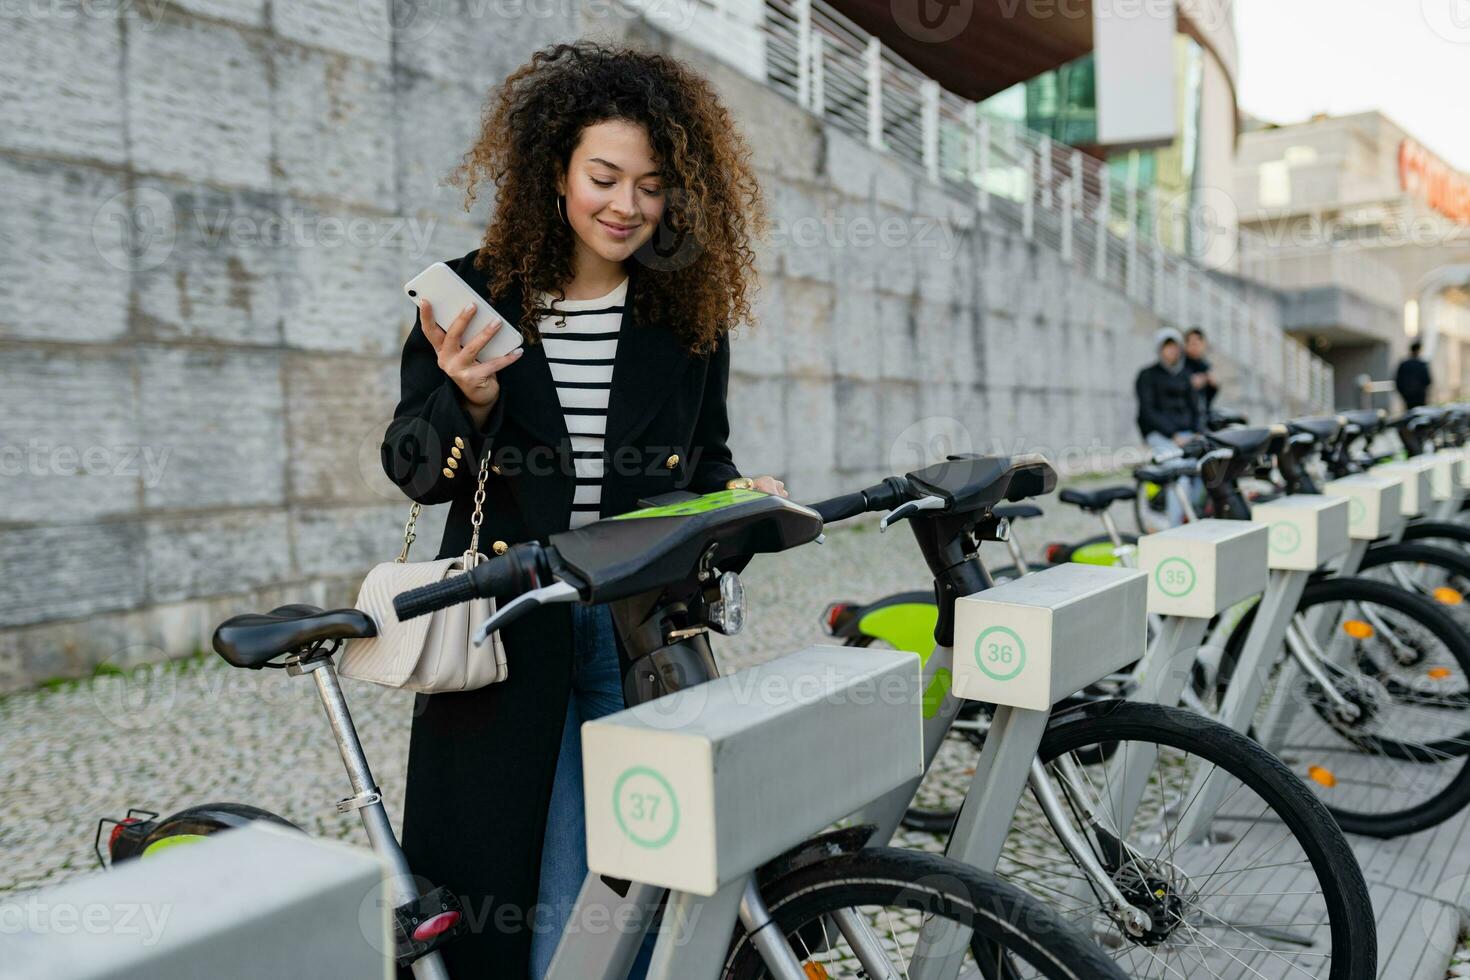 jolie frisé femme location une vélo dans rue avec un app photo